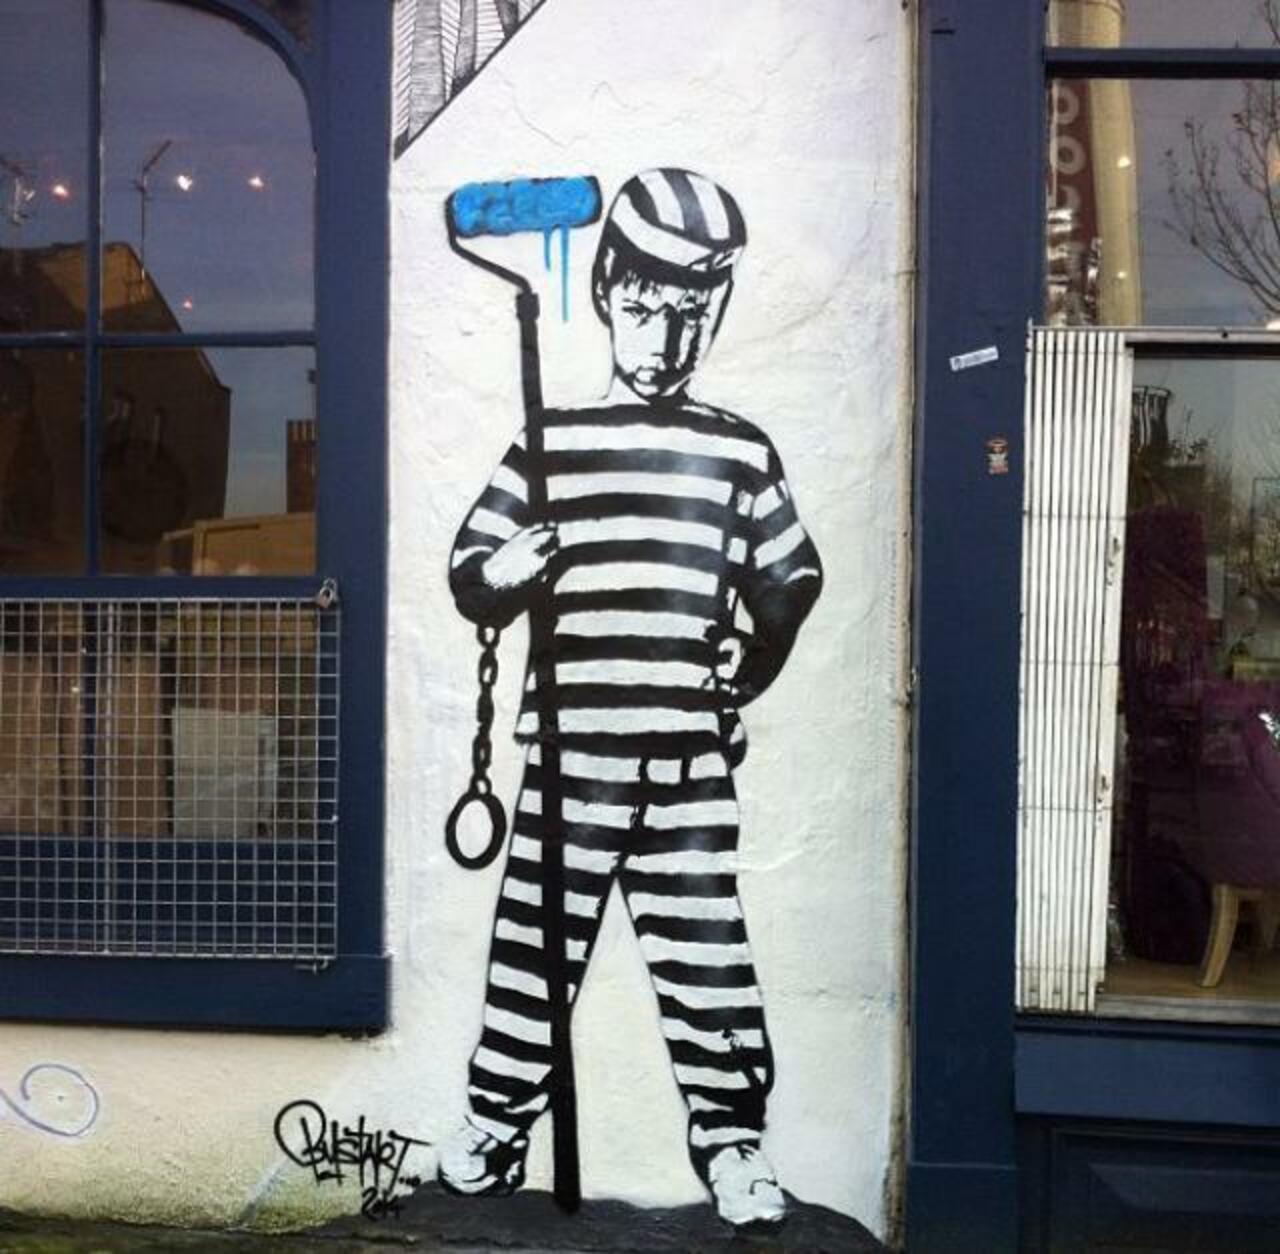 ArtOfBust recent Street Art in Camden Town, London

#art #arte #graffiti #steetart http://t.co/Q4zOuSlvy4